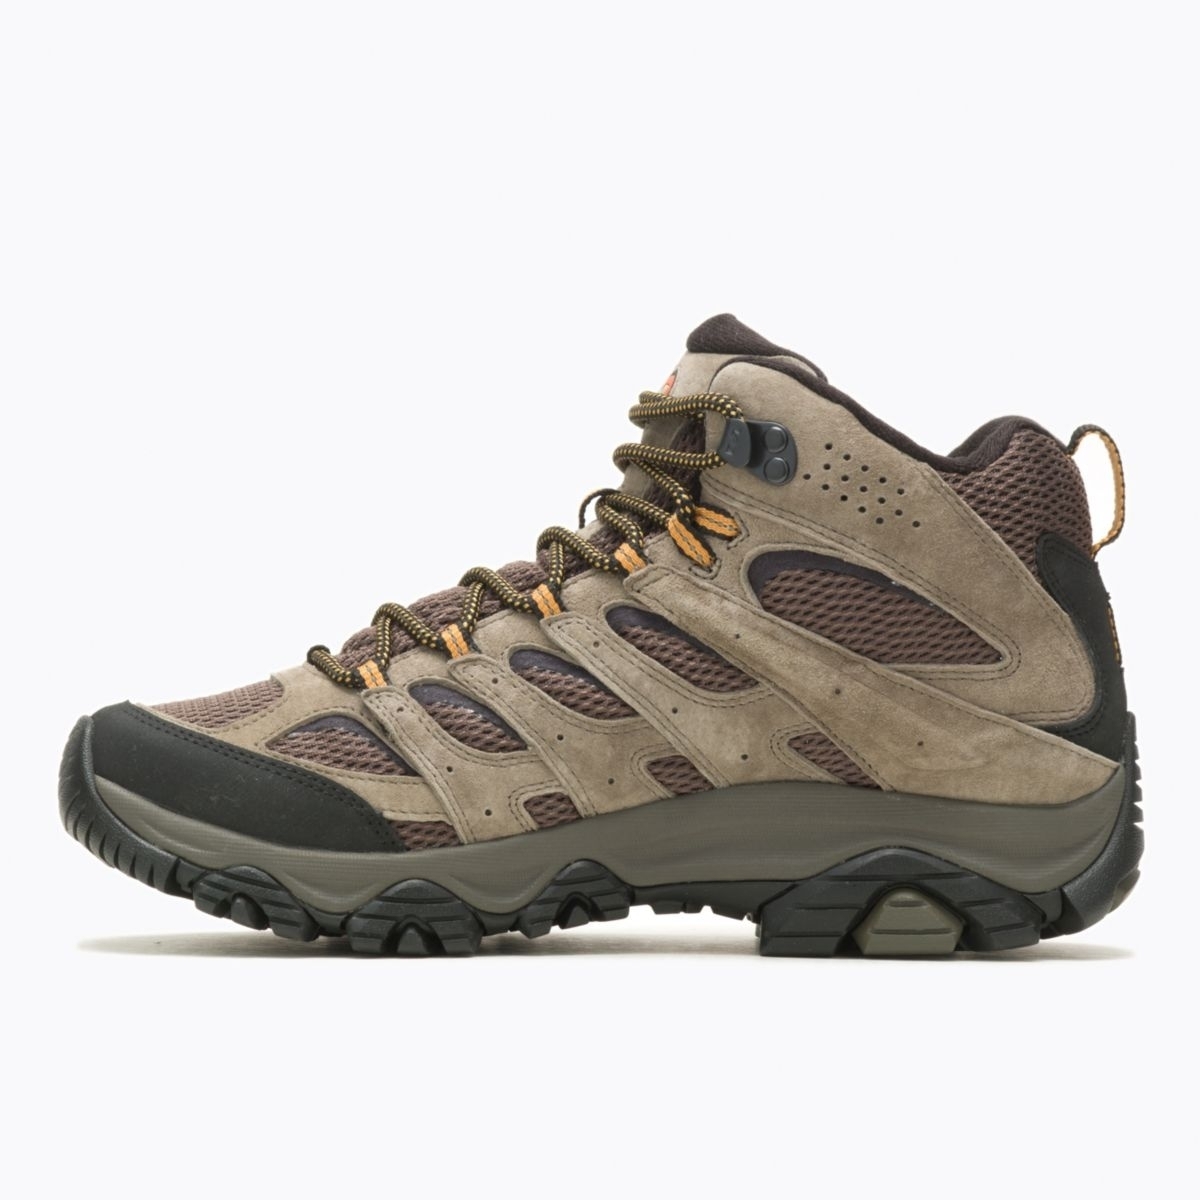 Merrell Men's Moab 3 Mid GORE-TEX Hiking Boot Walnut - J035795 WALNUT - WALNUT, 9.5